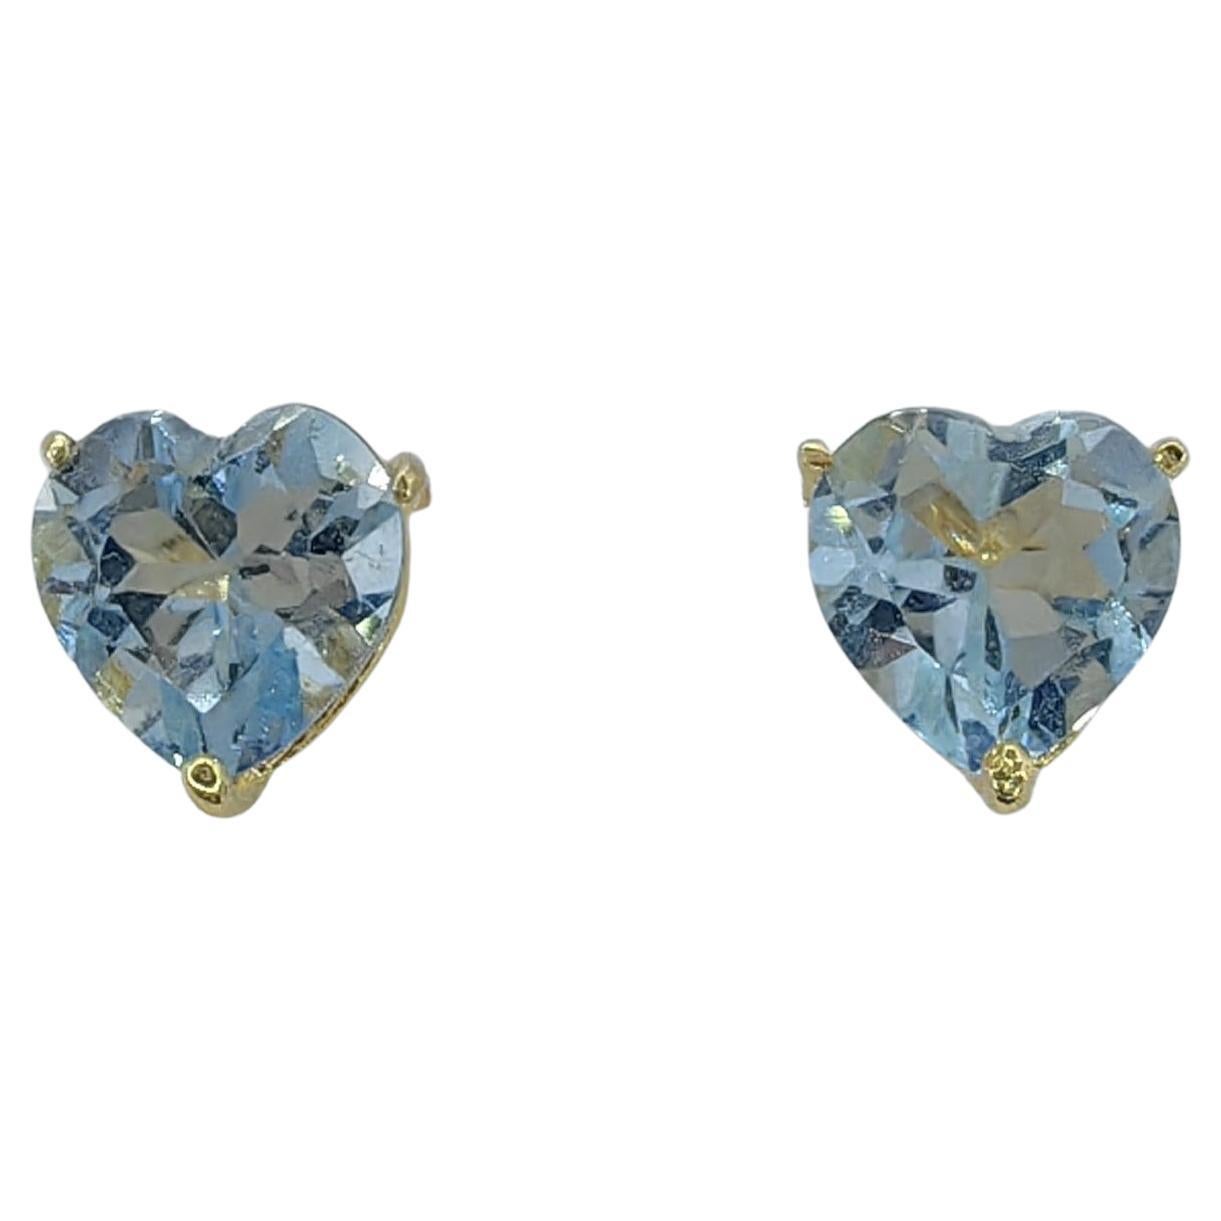 Vintage 1980's Heart-cut Blue Topaz Stud Earrings in 14K Yellow Gold